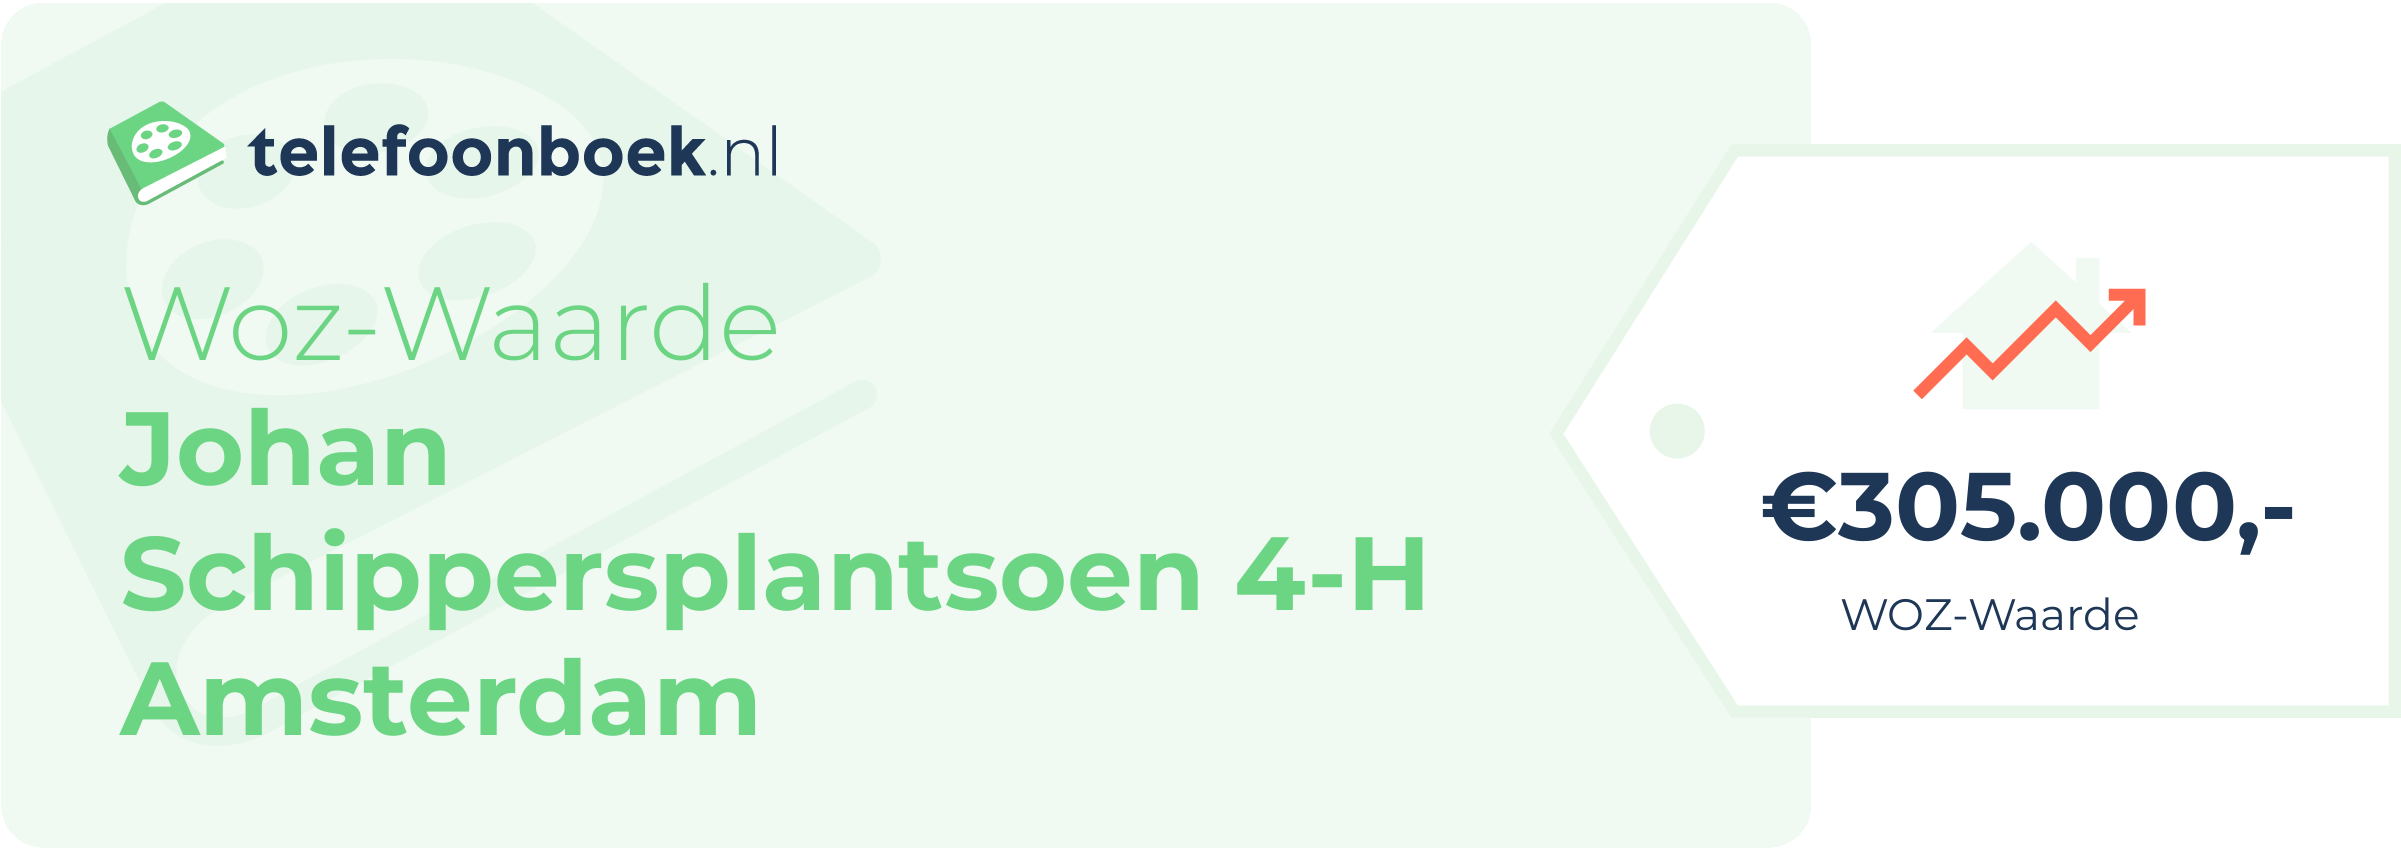 WOZ-waarde Johan Schippersplantsoen 4-H Amsterdam